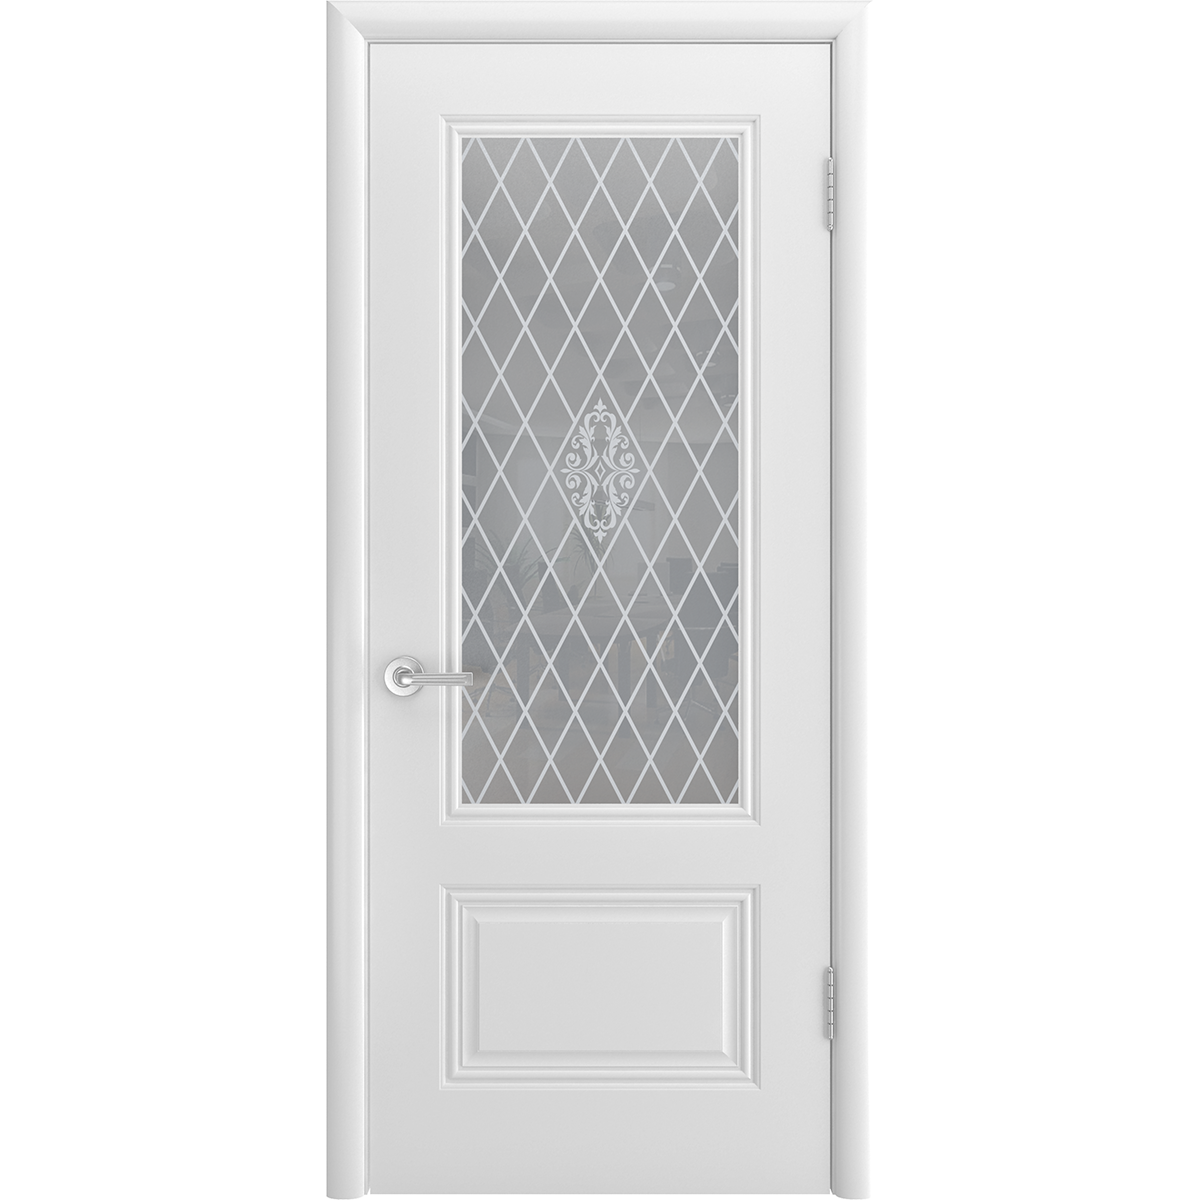 Межкомнатная дверь "Аккорд Грейс" (стекло)